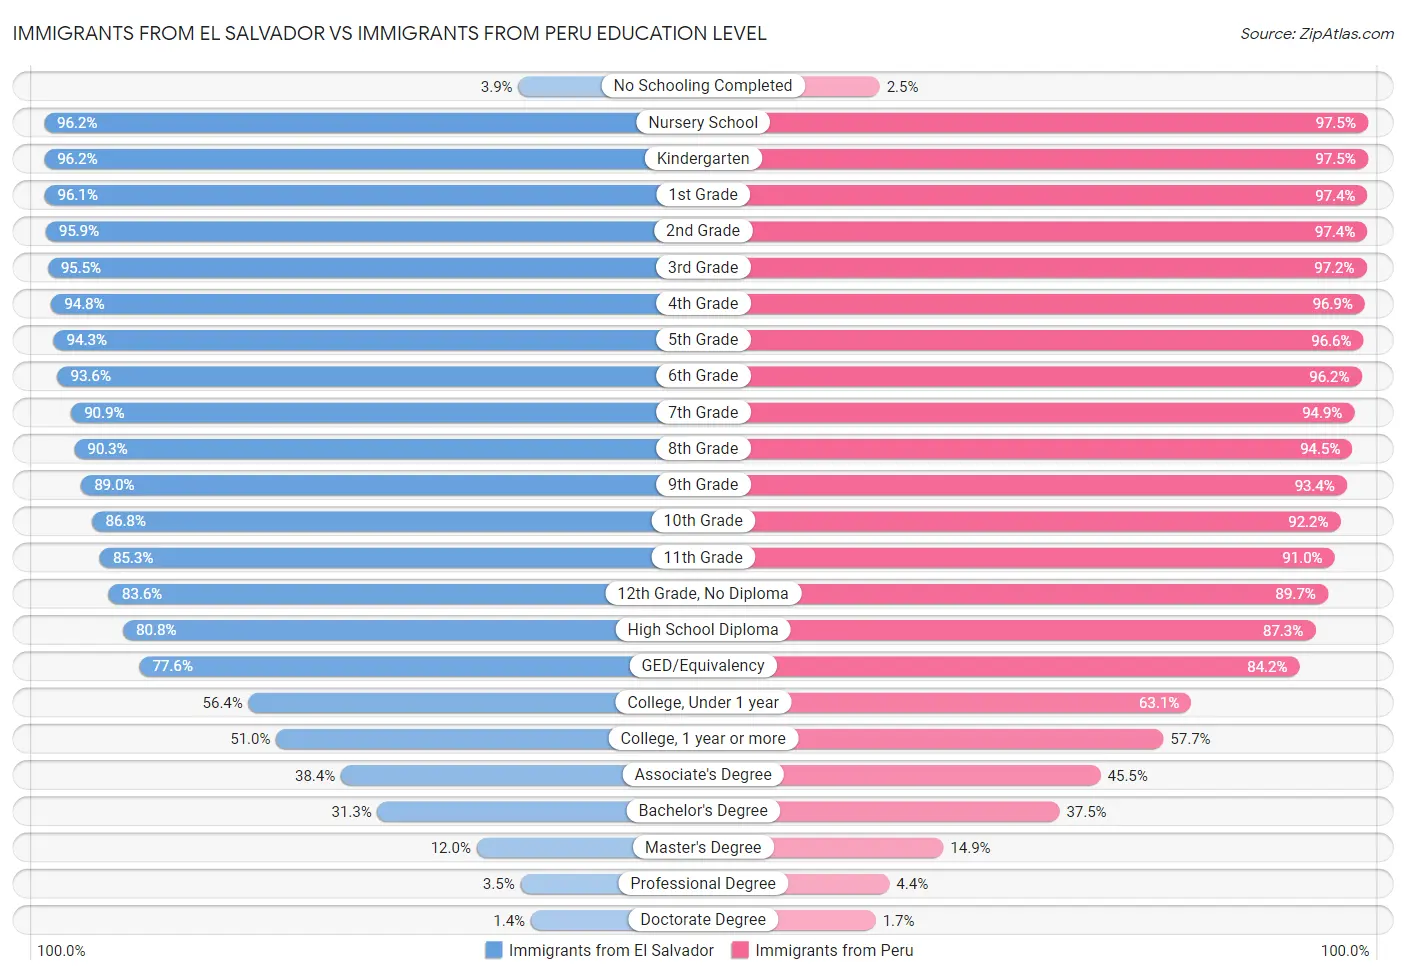 Immigrants from El Salvador vs Immigrants from Peru Education Level